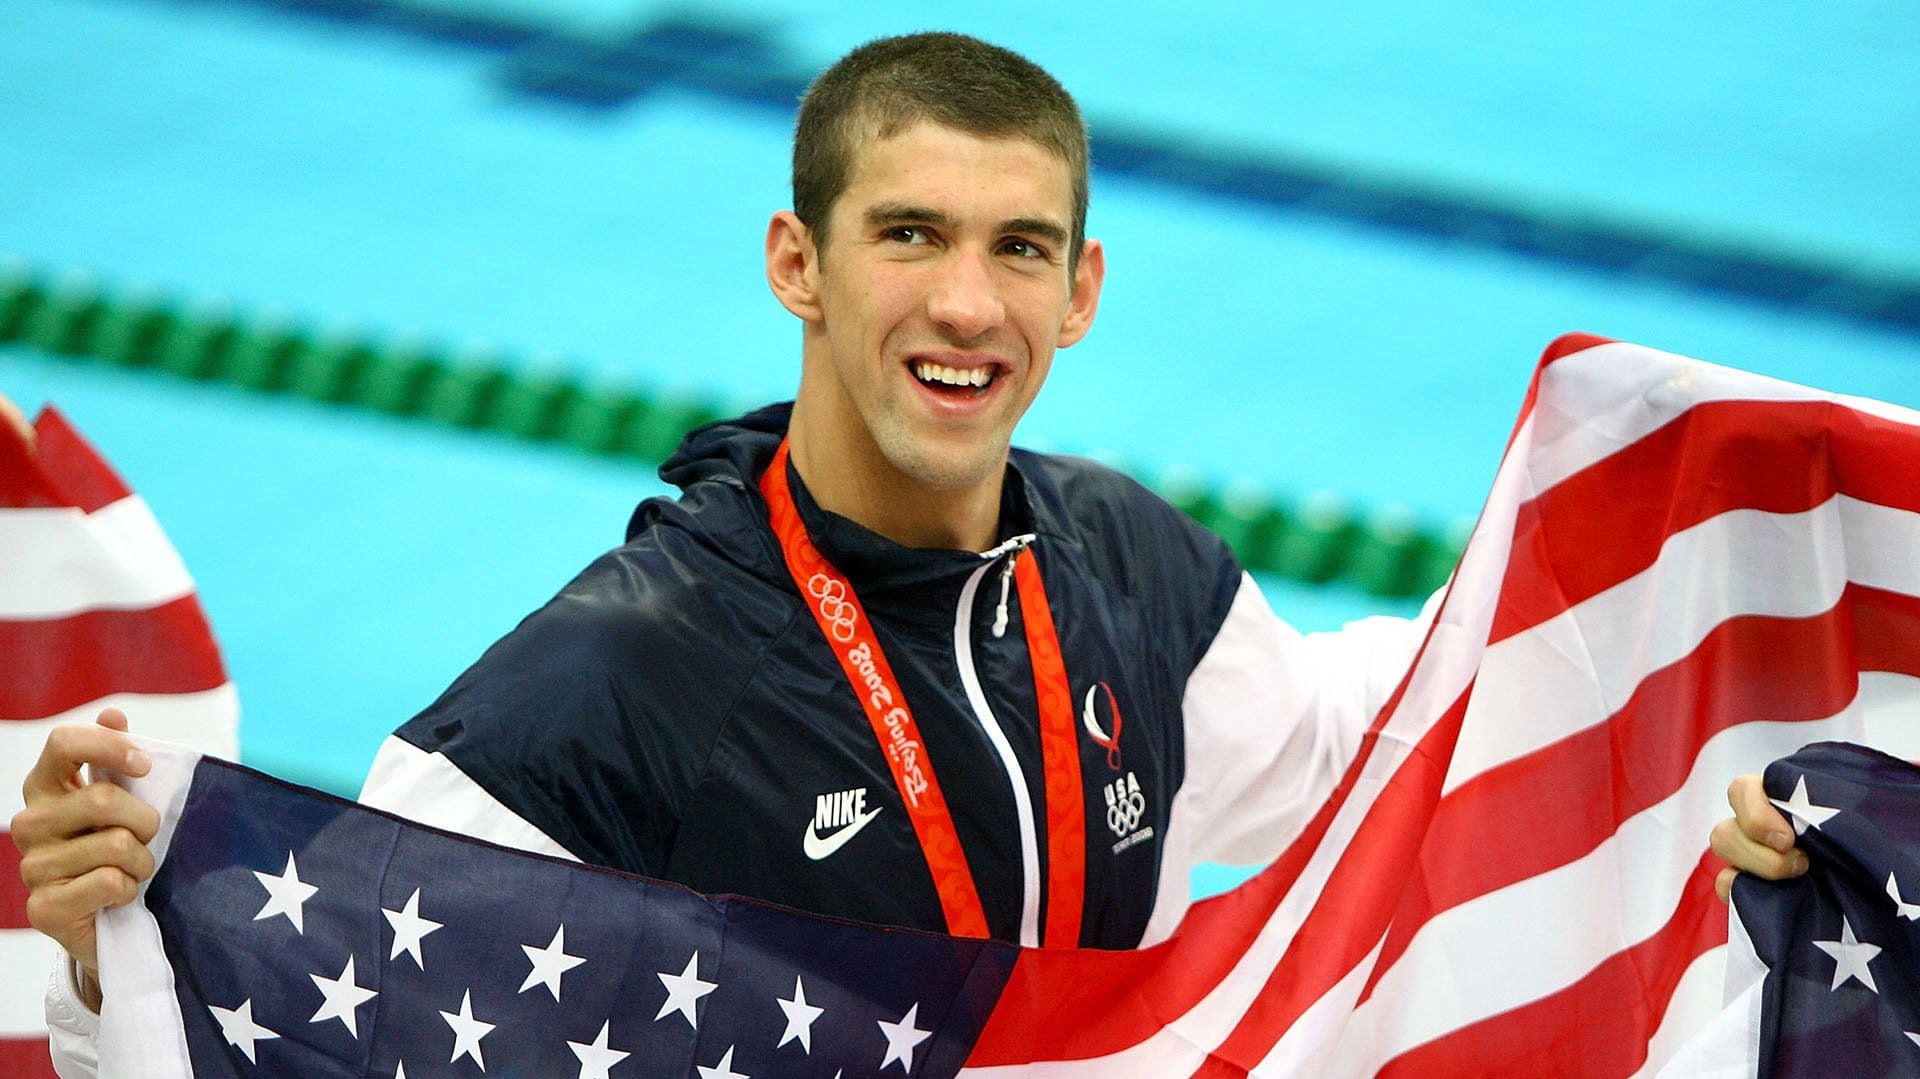 Un joven Phelps durante los Juegos Olímpicos de Beijing 2008 (Photo by Adam Pretty/Getty Images)